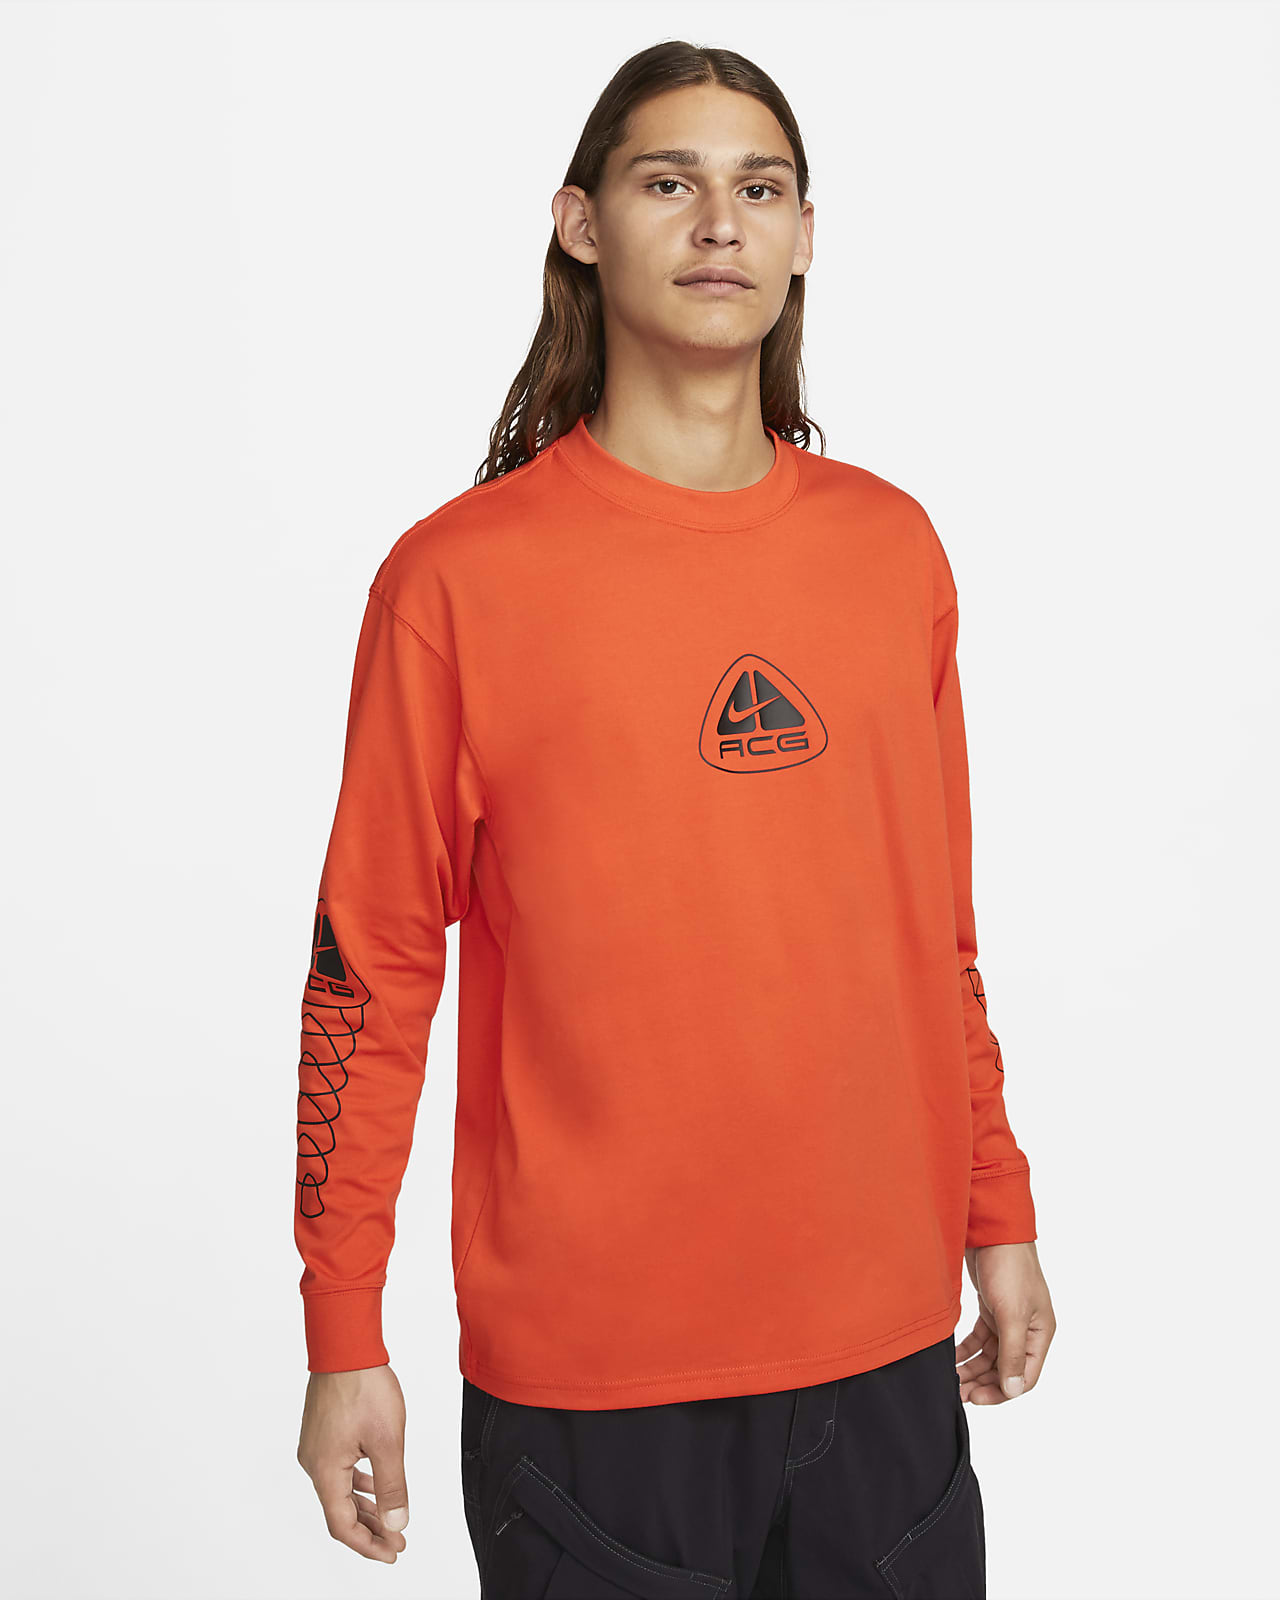 Pánské tričko Nike ACG s dlouhým rukávem